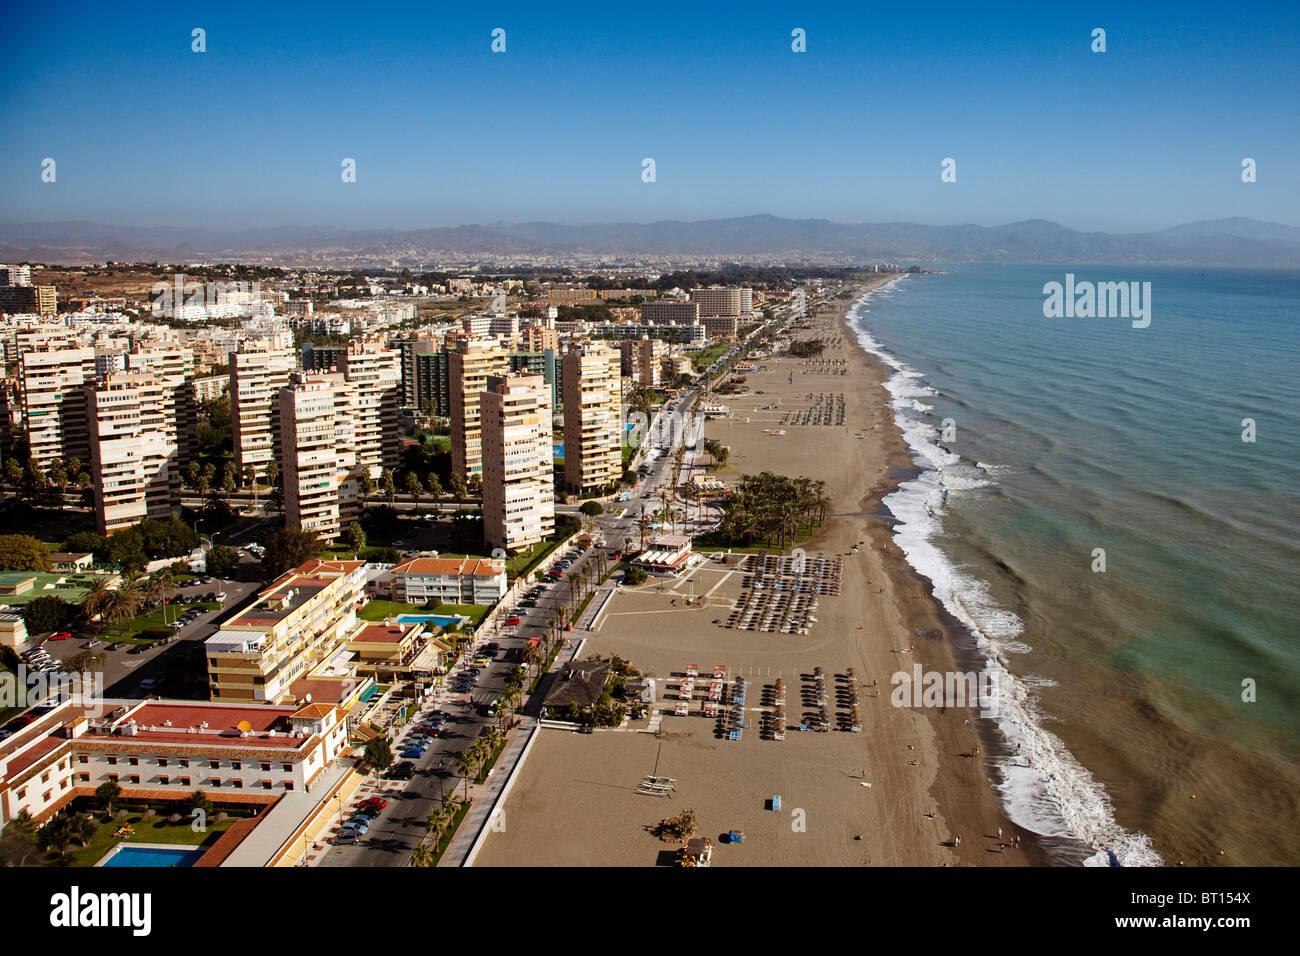 Vista aerea playas del Bajondillo Torremolinos Málaga Costa del Sol Andalucía España Aerial view beaches andalusia spain Stock Photo